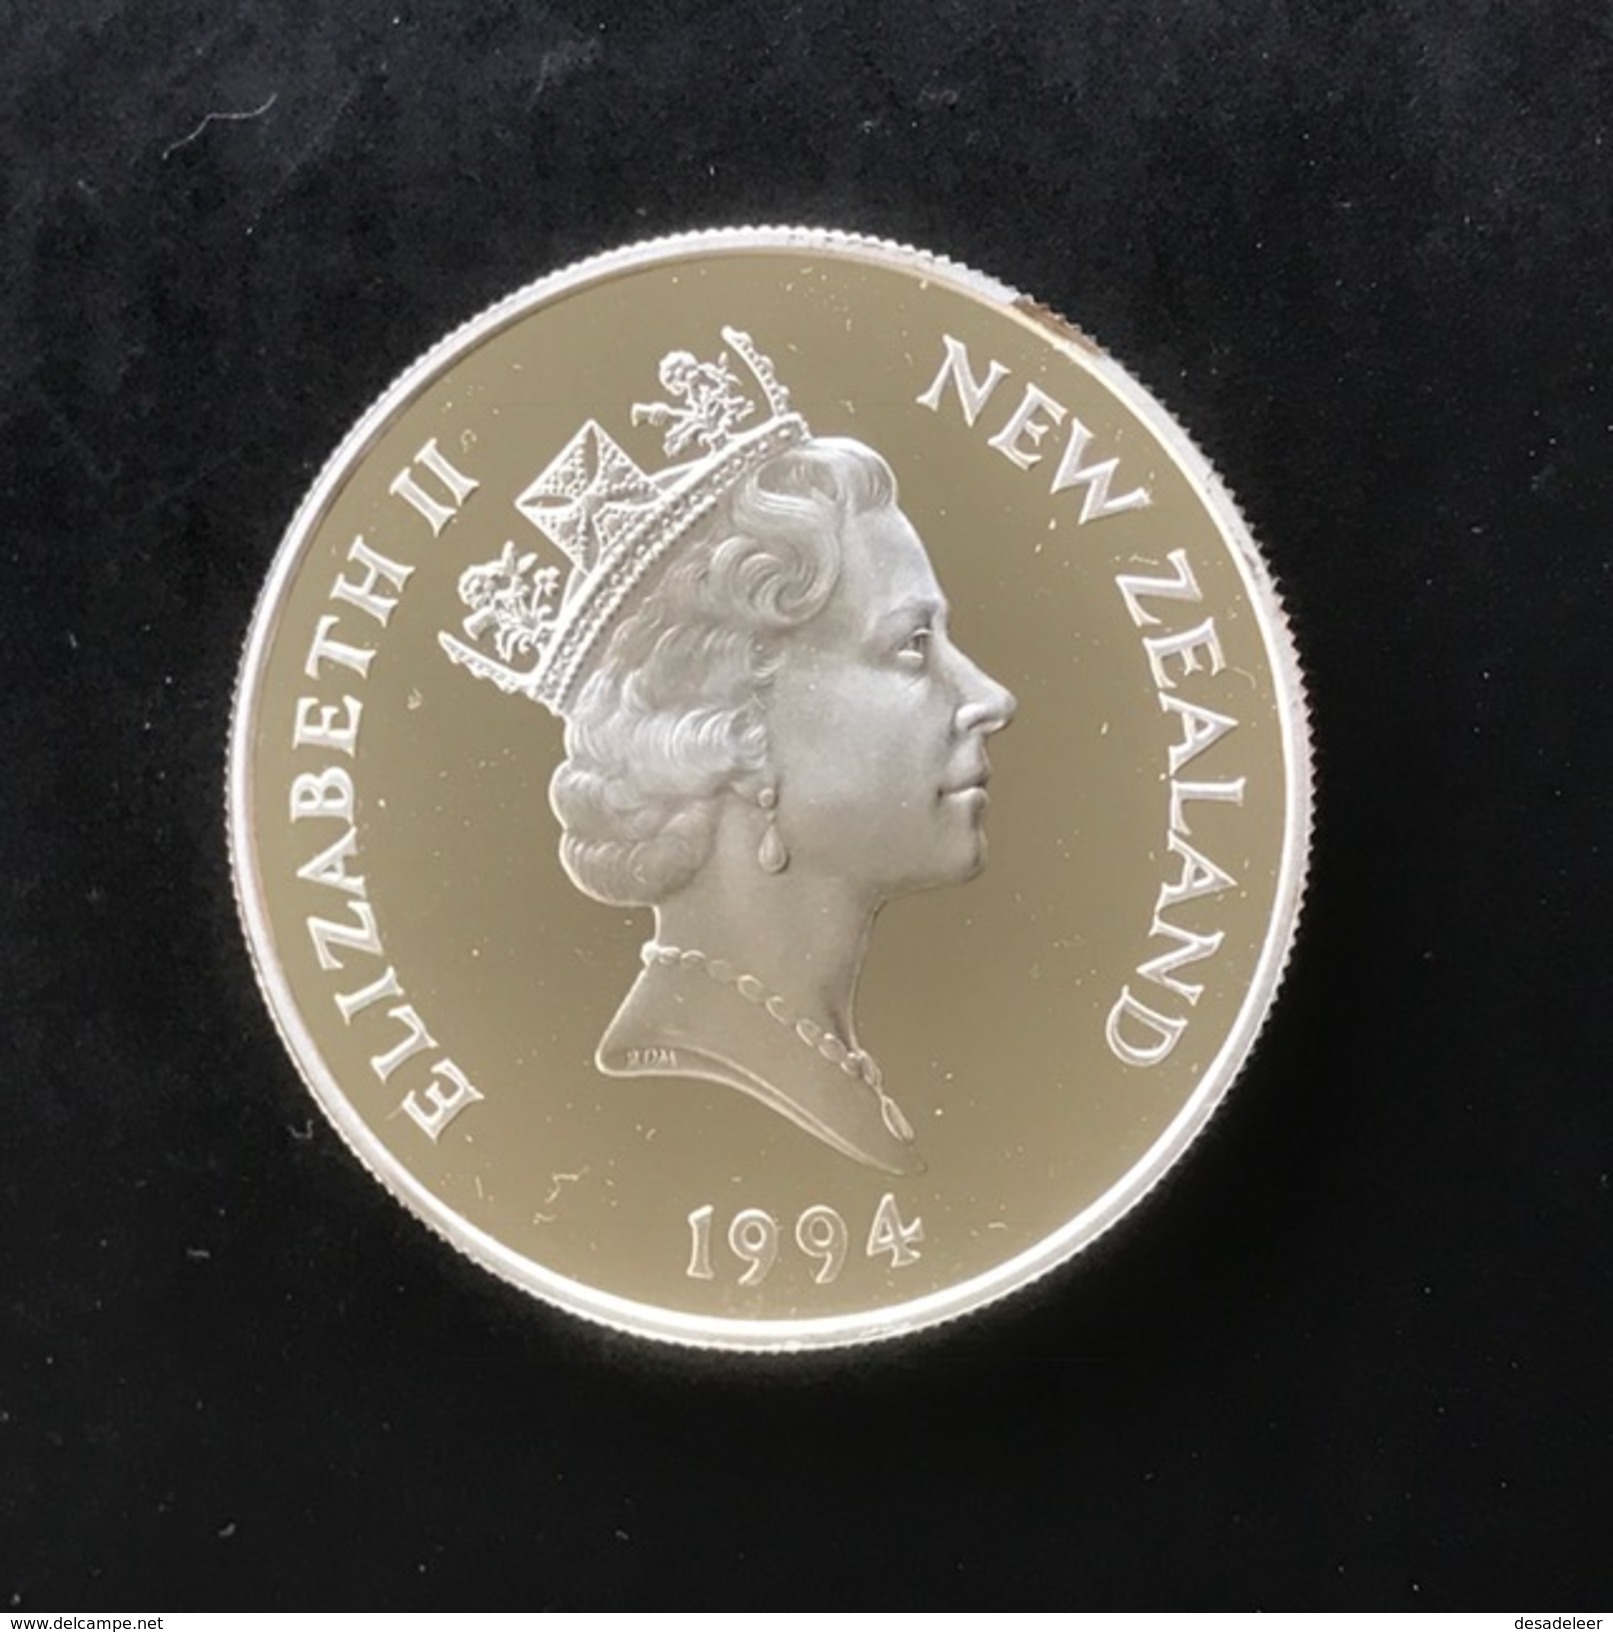 New Zealand 5 Dollar 1994 (Proof) - Winter Olympics - Nieuw-Zeeland